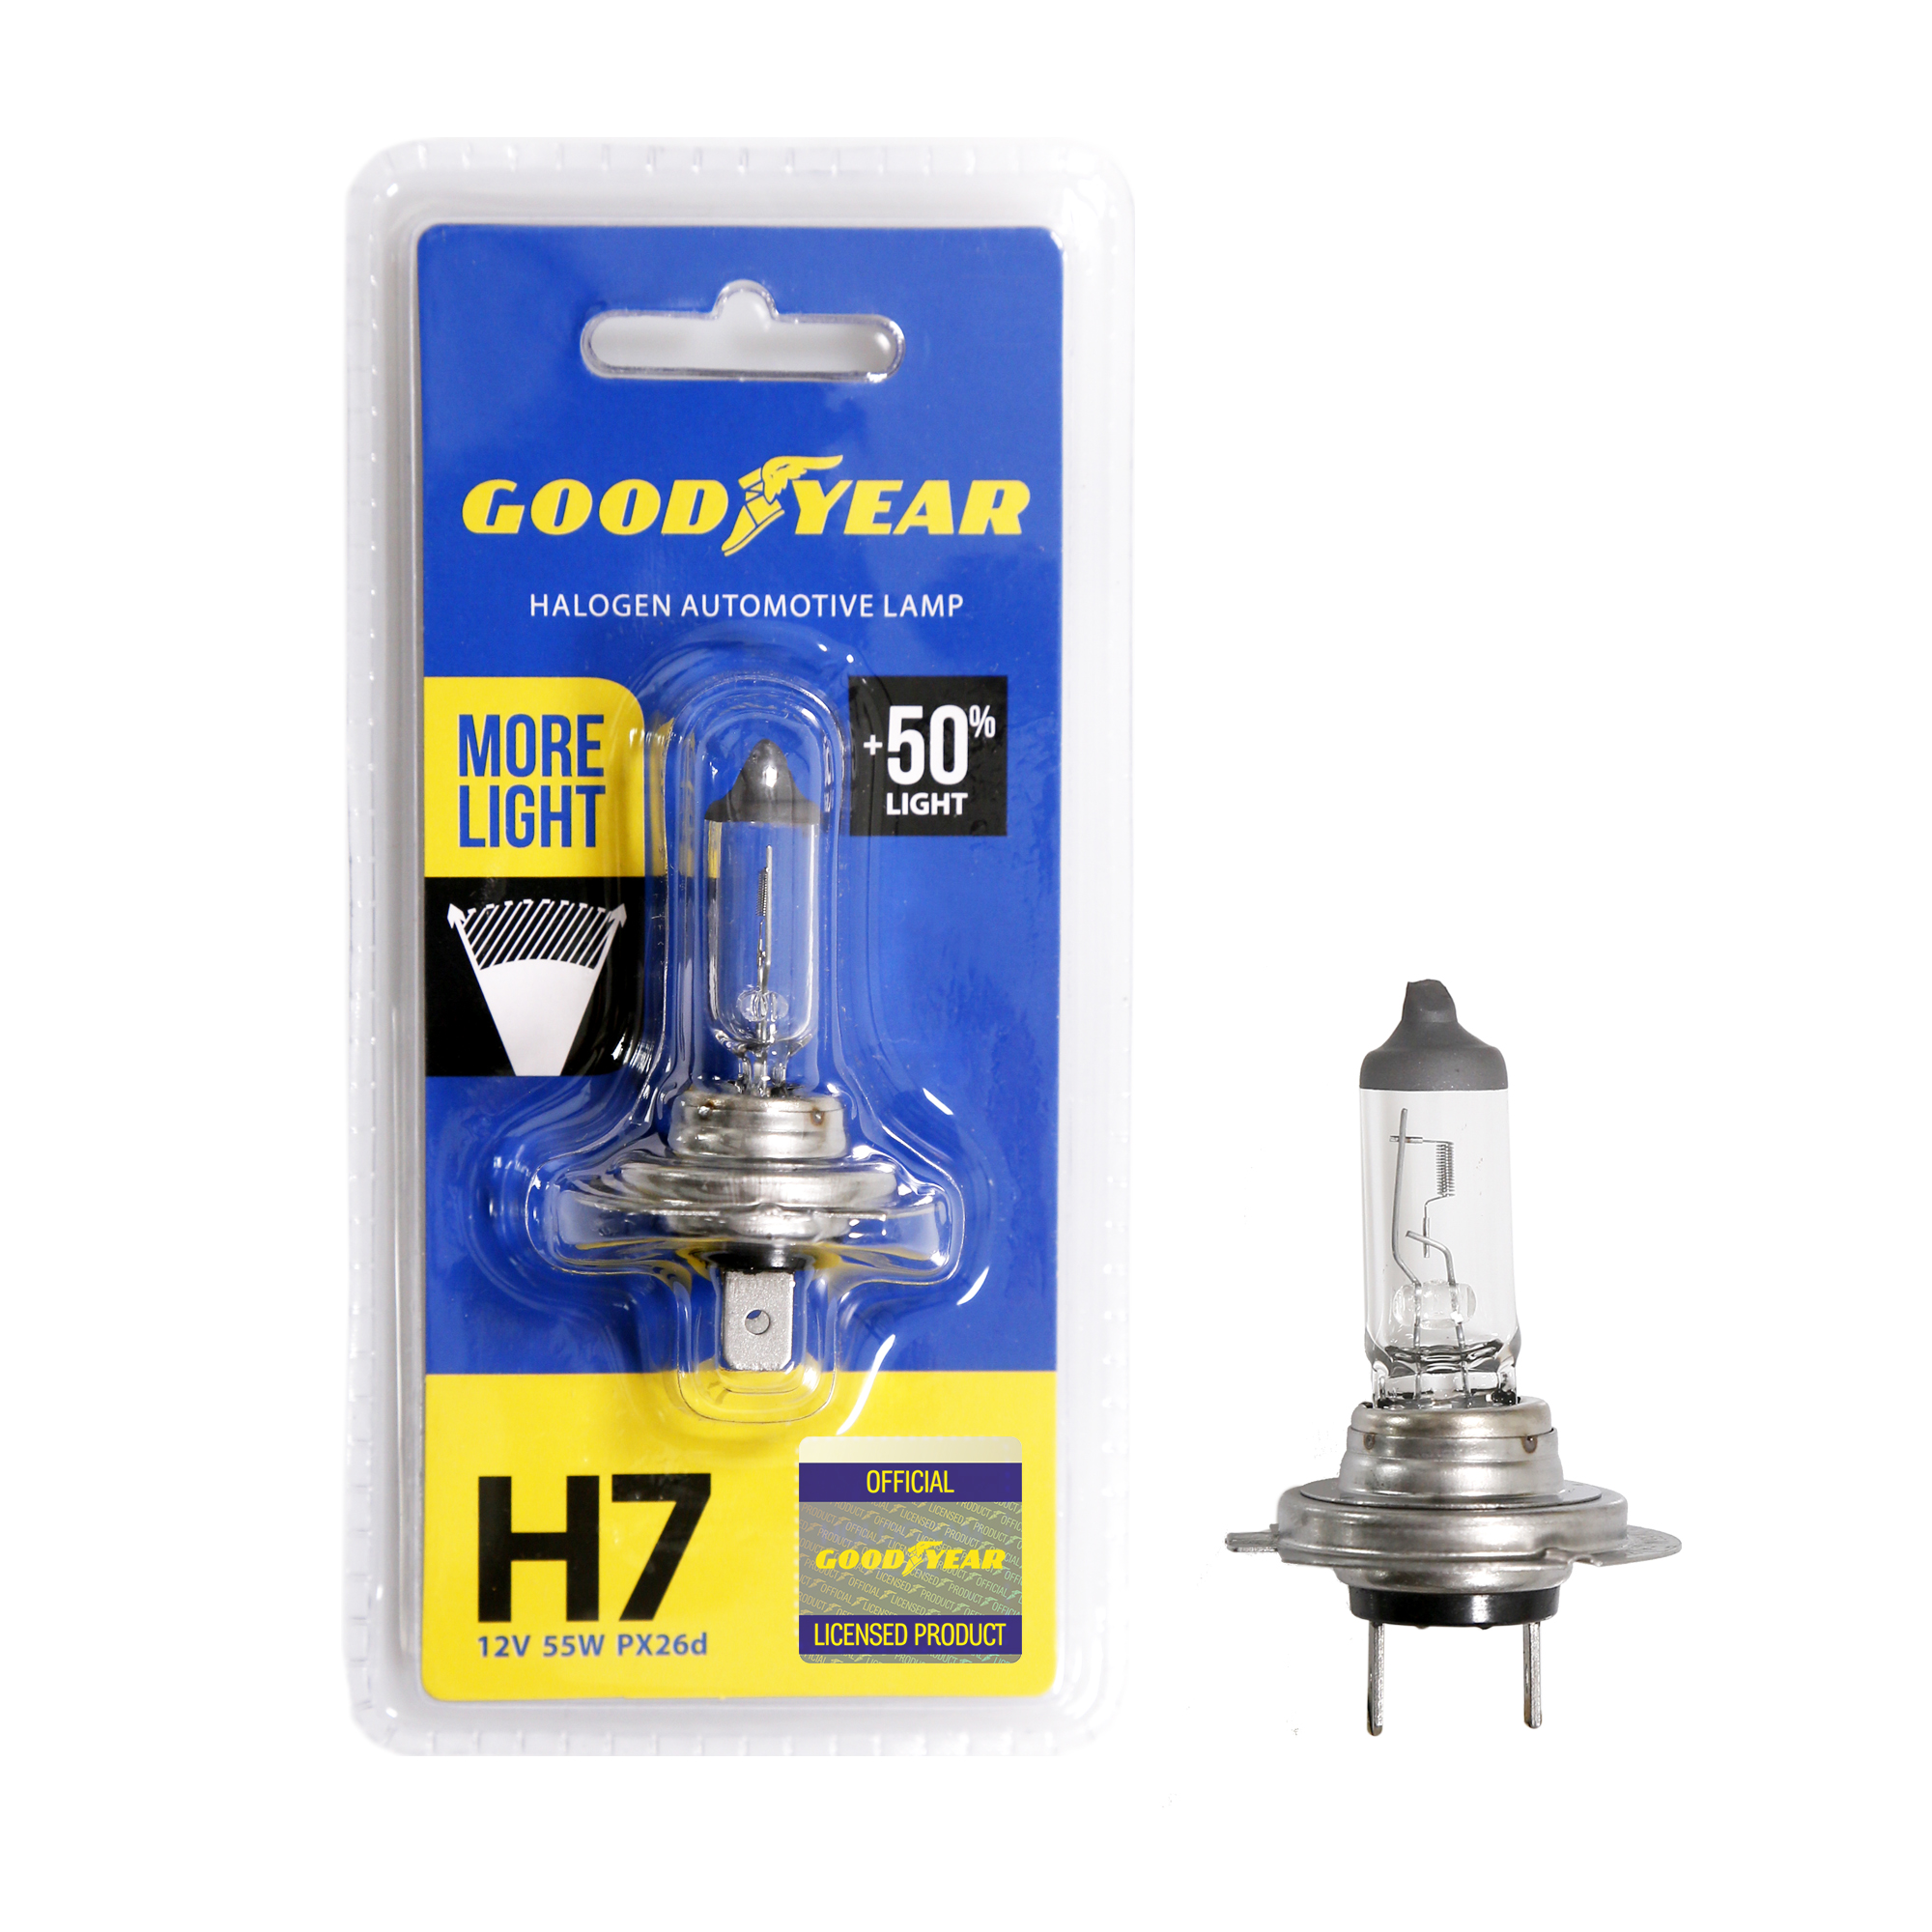 Лампа автомобильная галогенная Goodyear H7 12V 55W PX26d (+50% света) More Light (блистер)